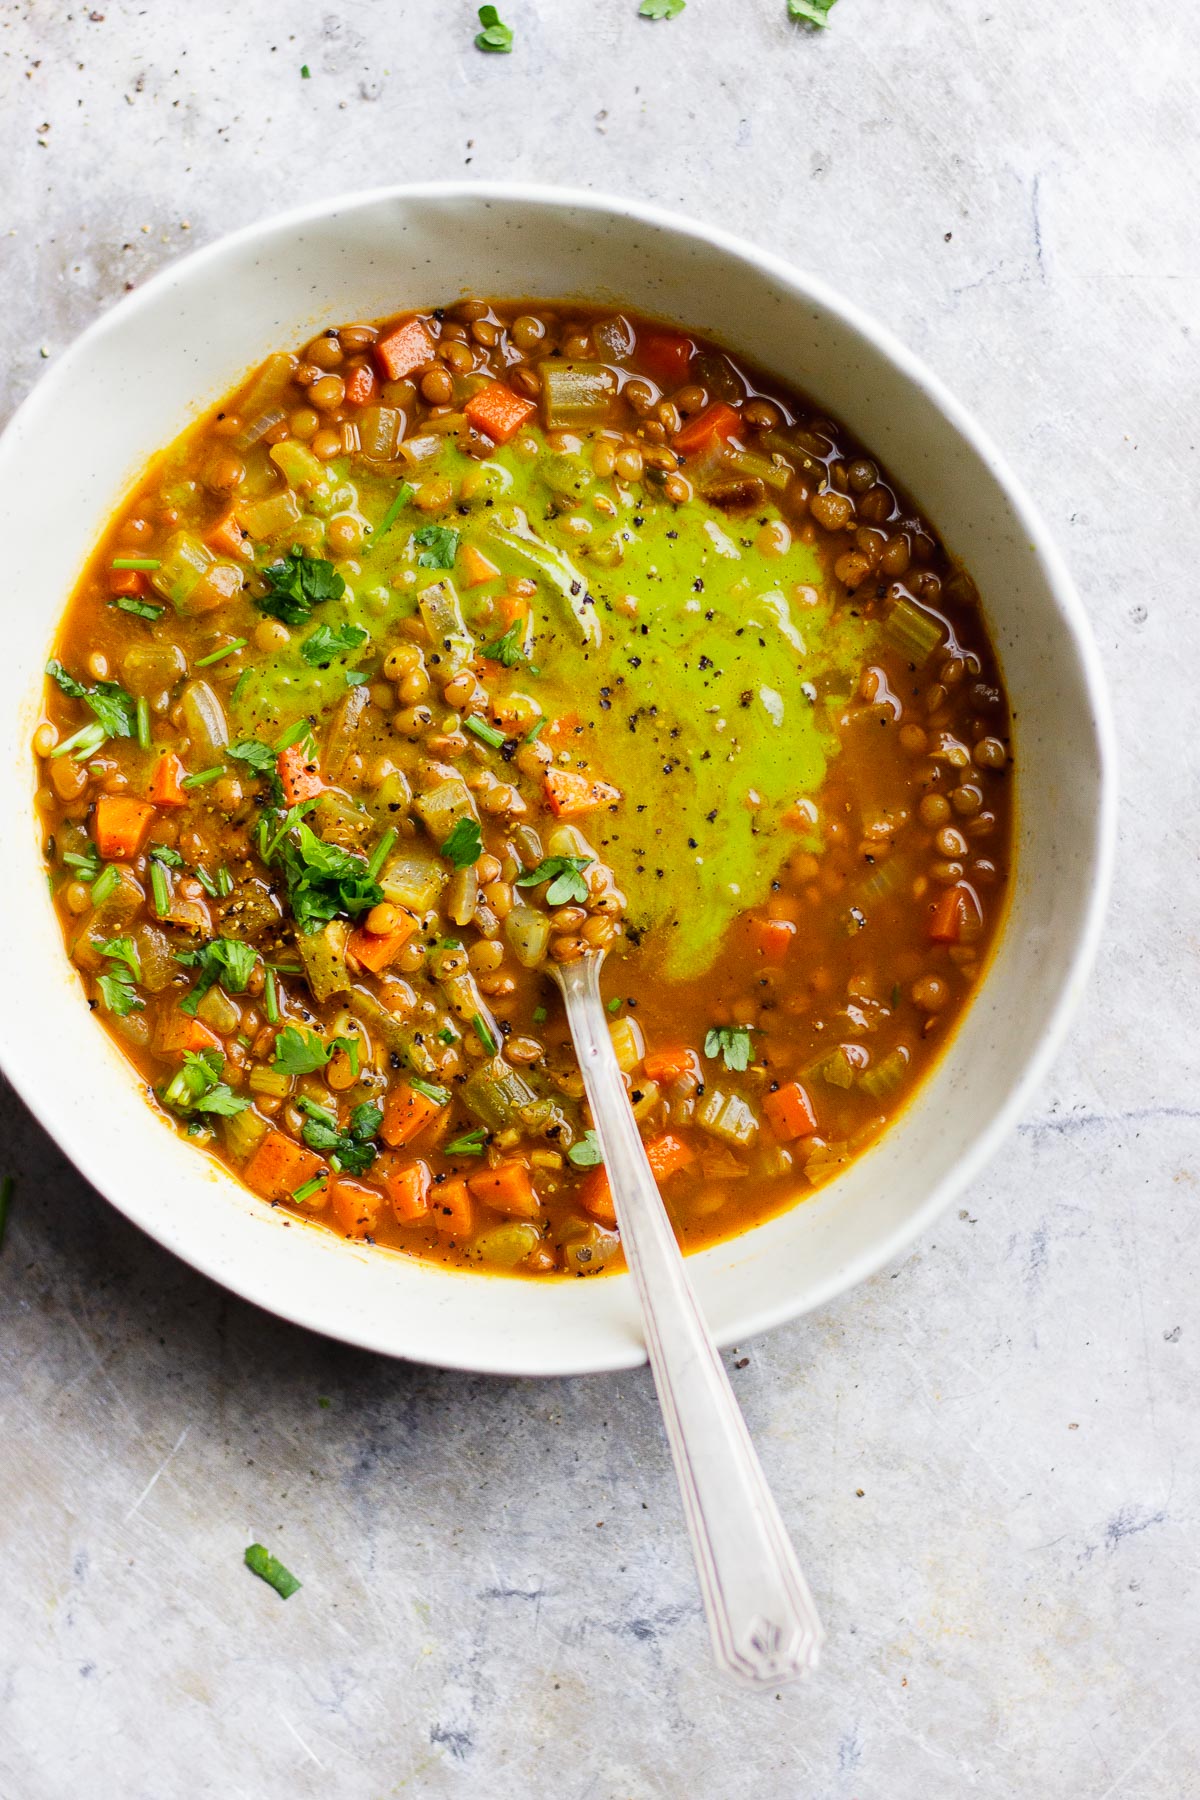 parsley sauce on vegan lentil soup